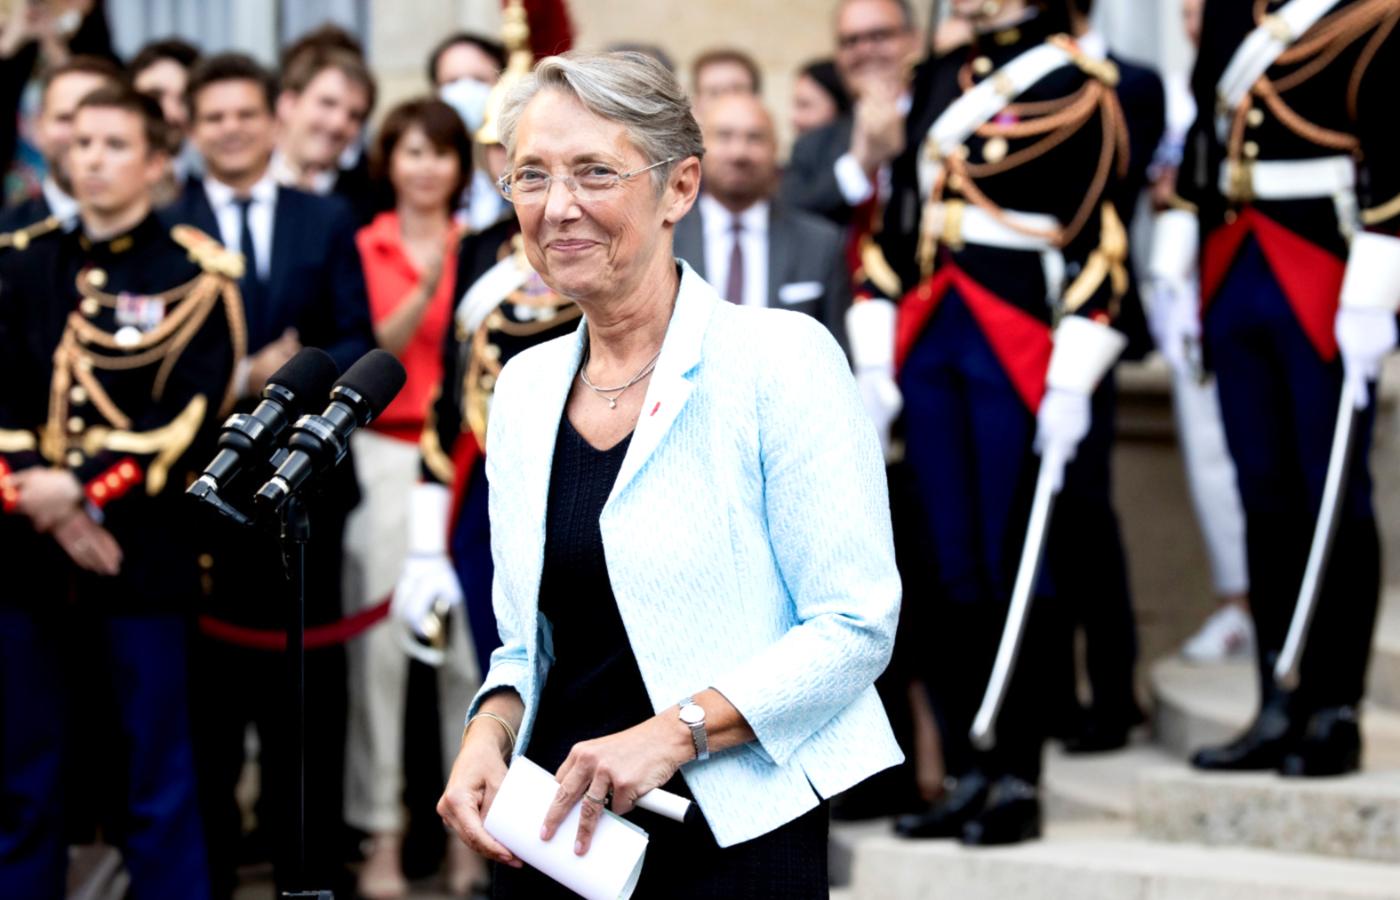 Élisabeth Borne, nowa premierka Francji. Ceremonia przekazania władzy, 16 maja 2022 r.